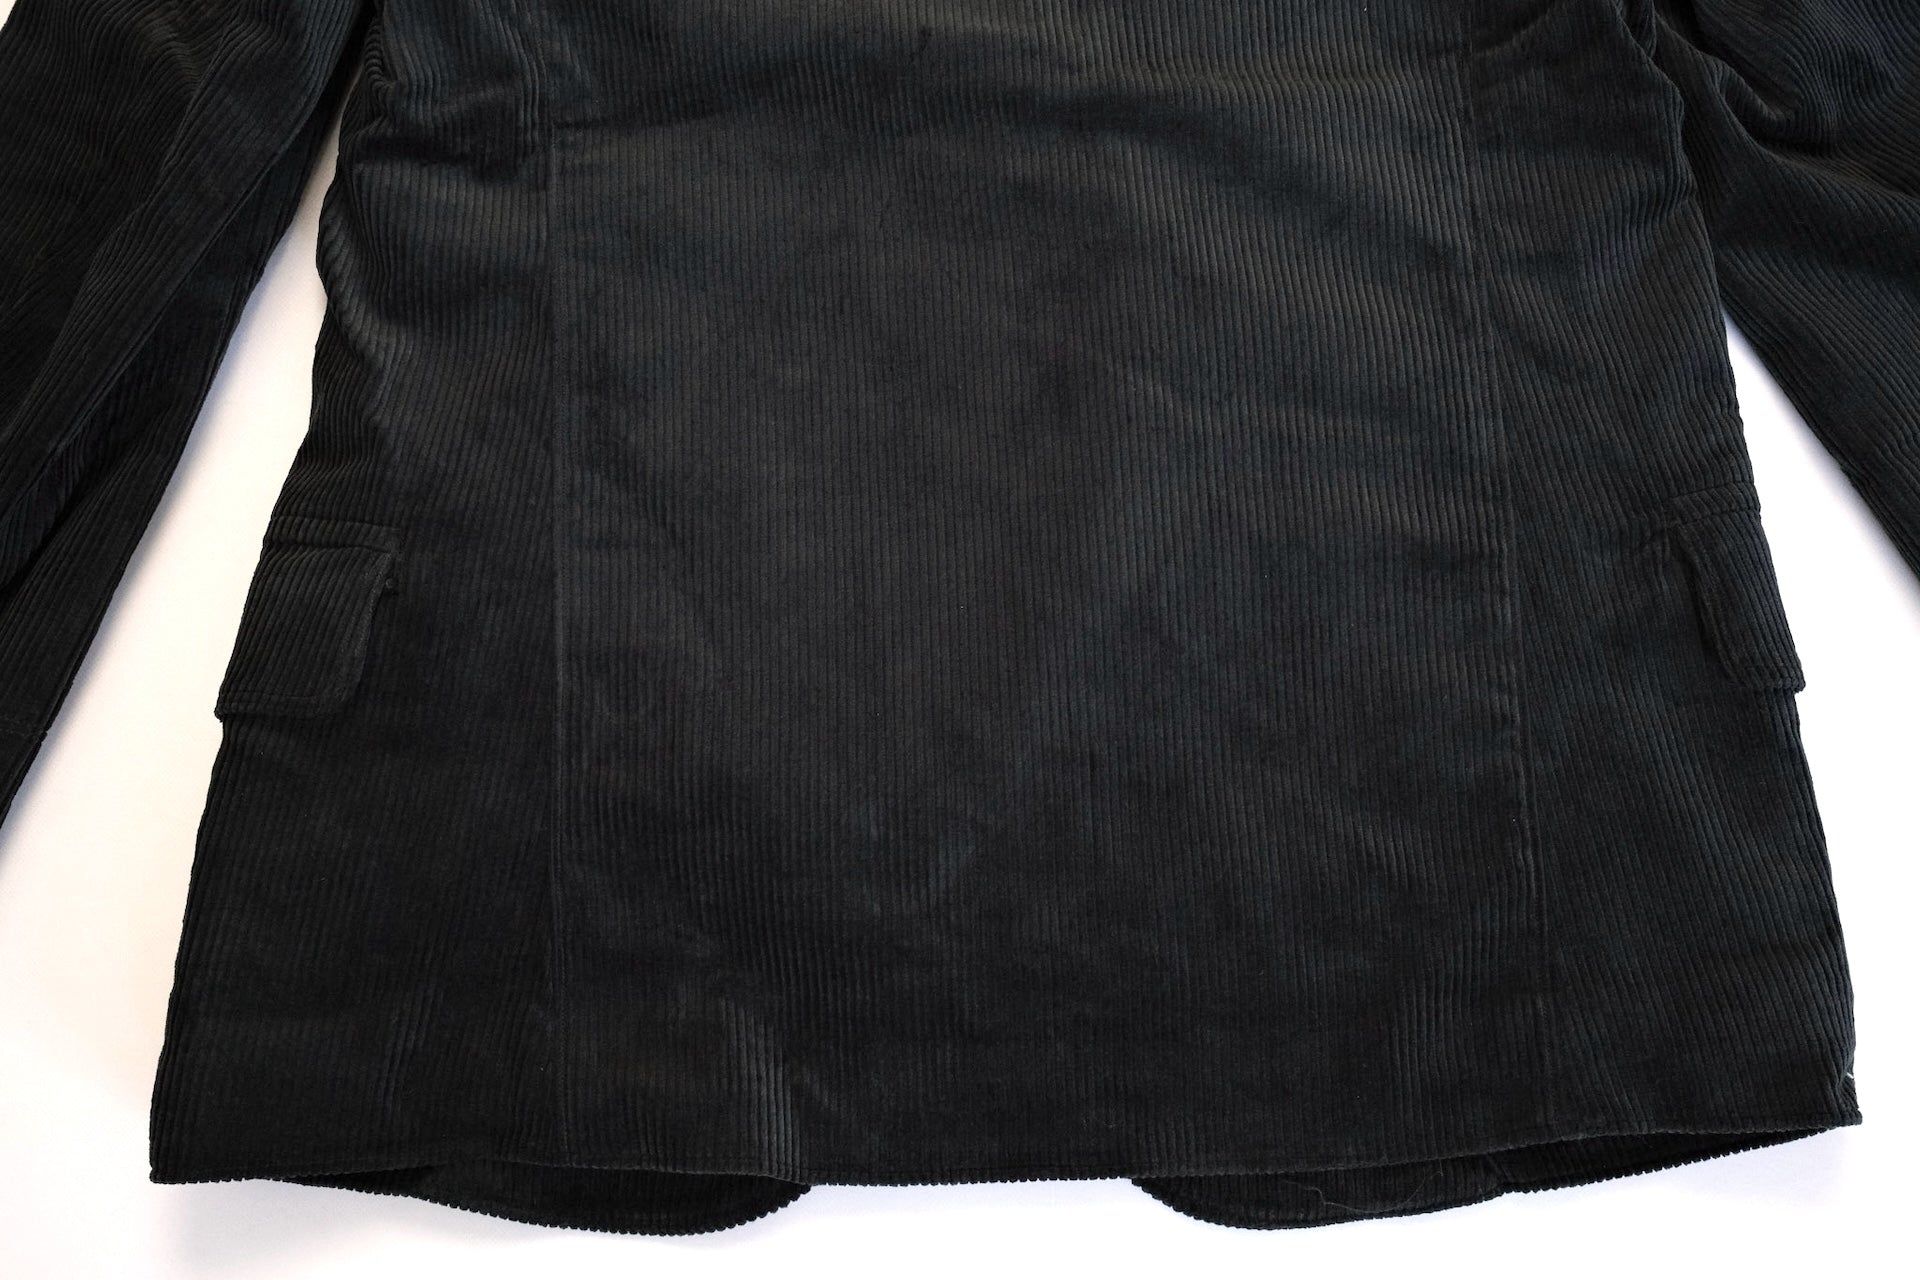 Freewheelers "Jackson" Corduroy Sack Coat (Black)